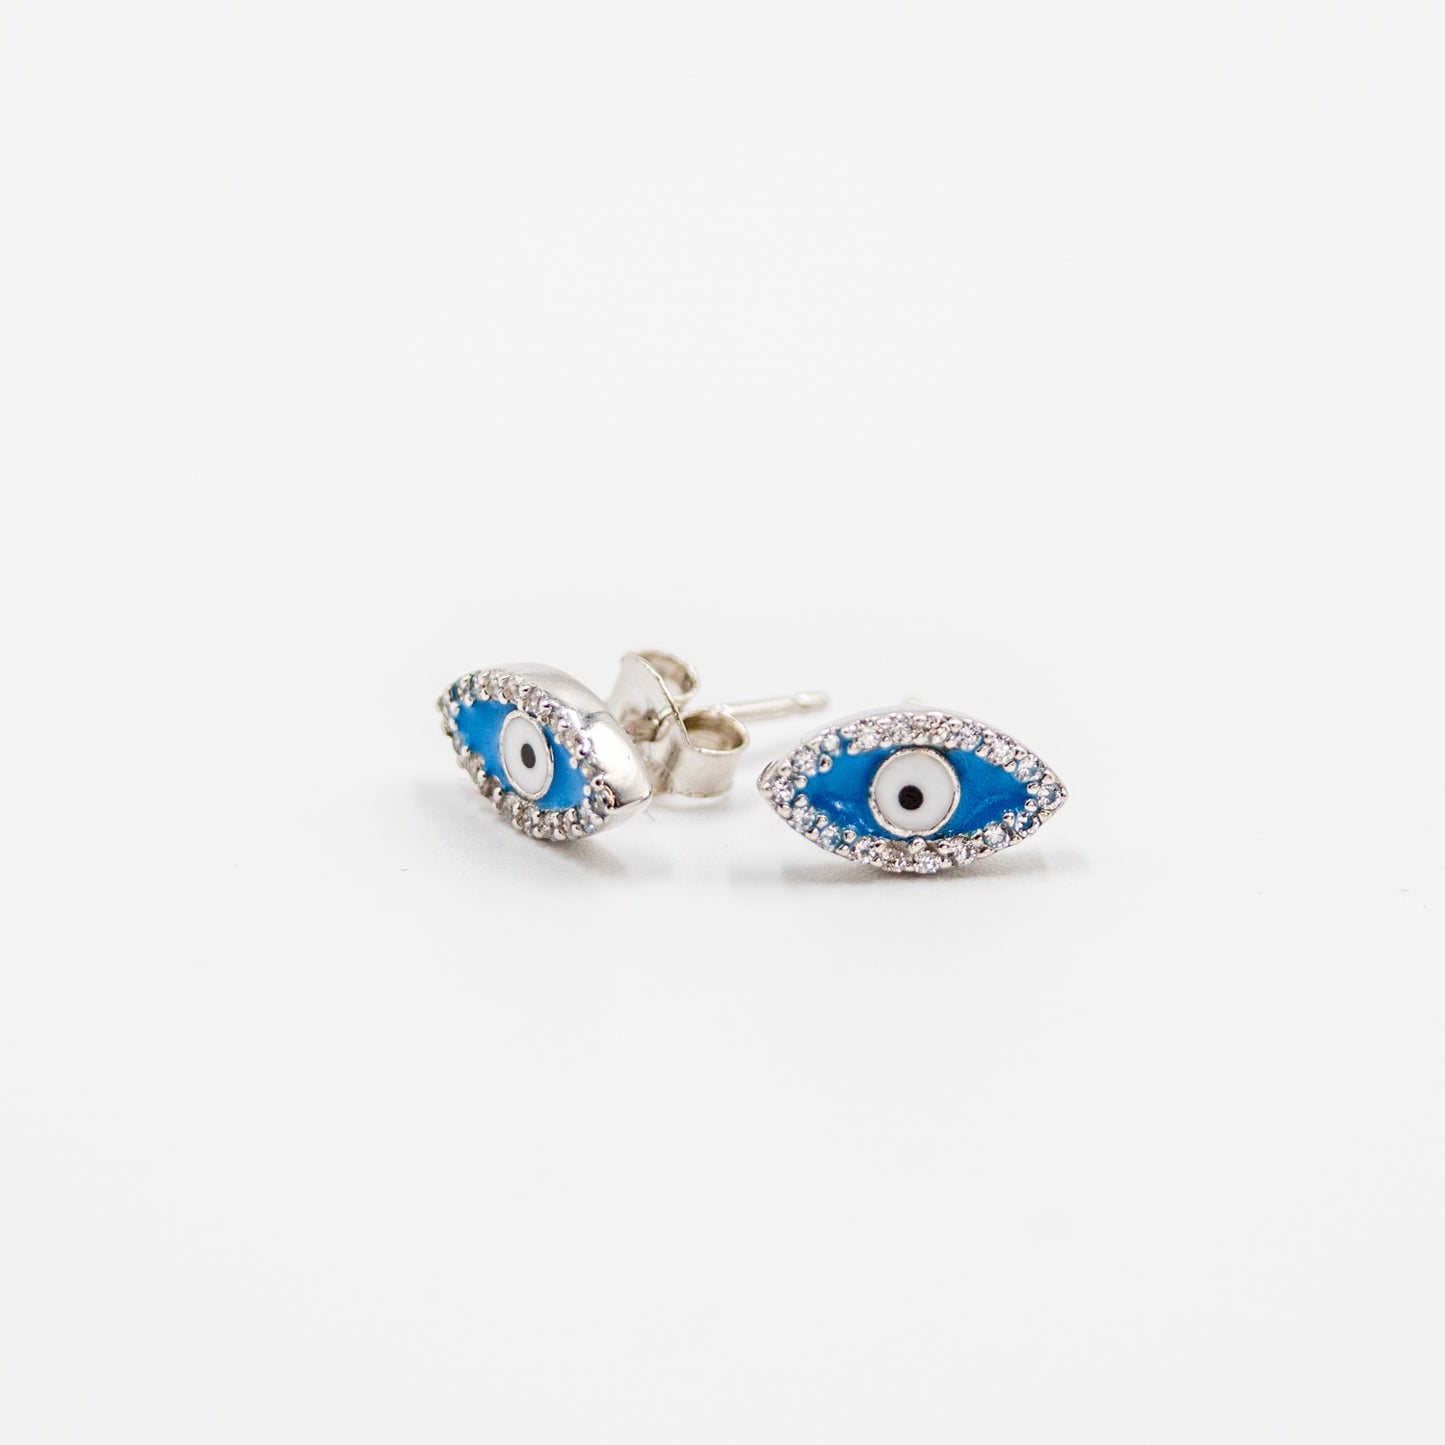 DK-925-180 Sterling silver eye earrings